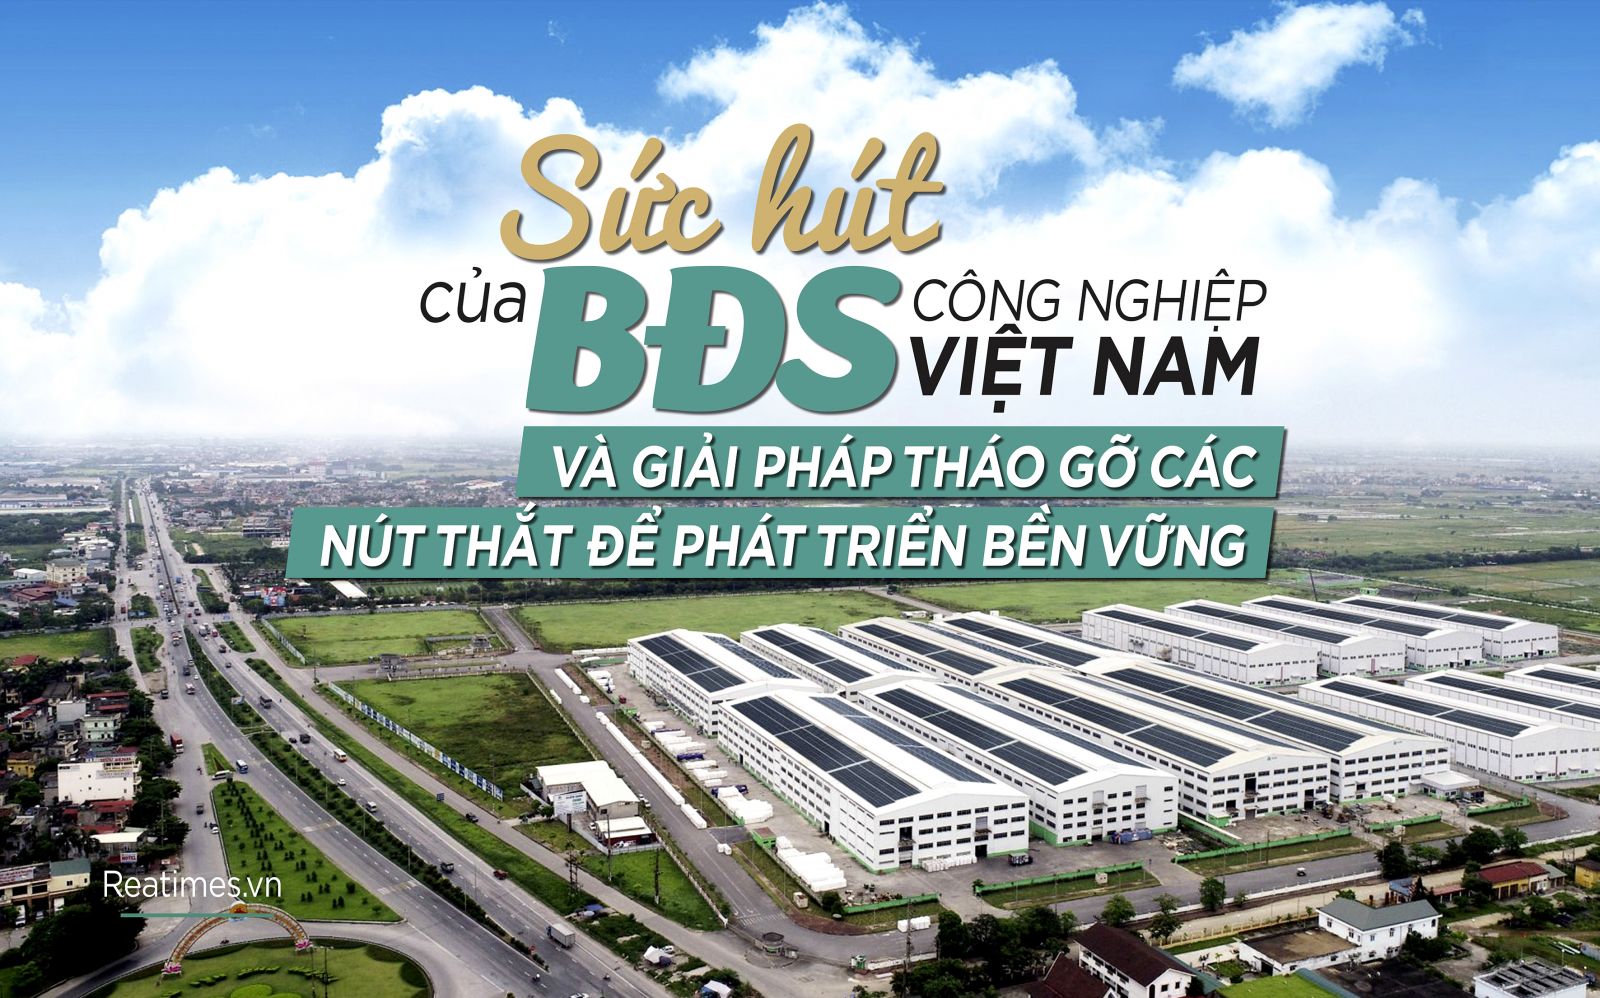 Vượt qua năm 2021 khó khăn, BĐS công nghiệp Việt Nam sẵn sàng với những vận hội mới